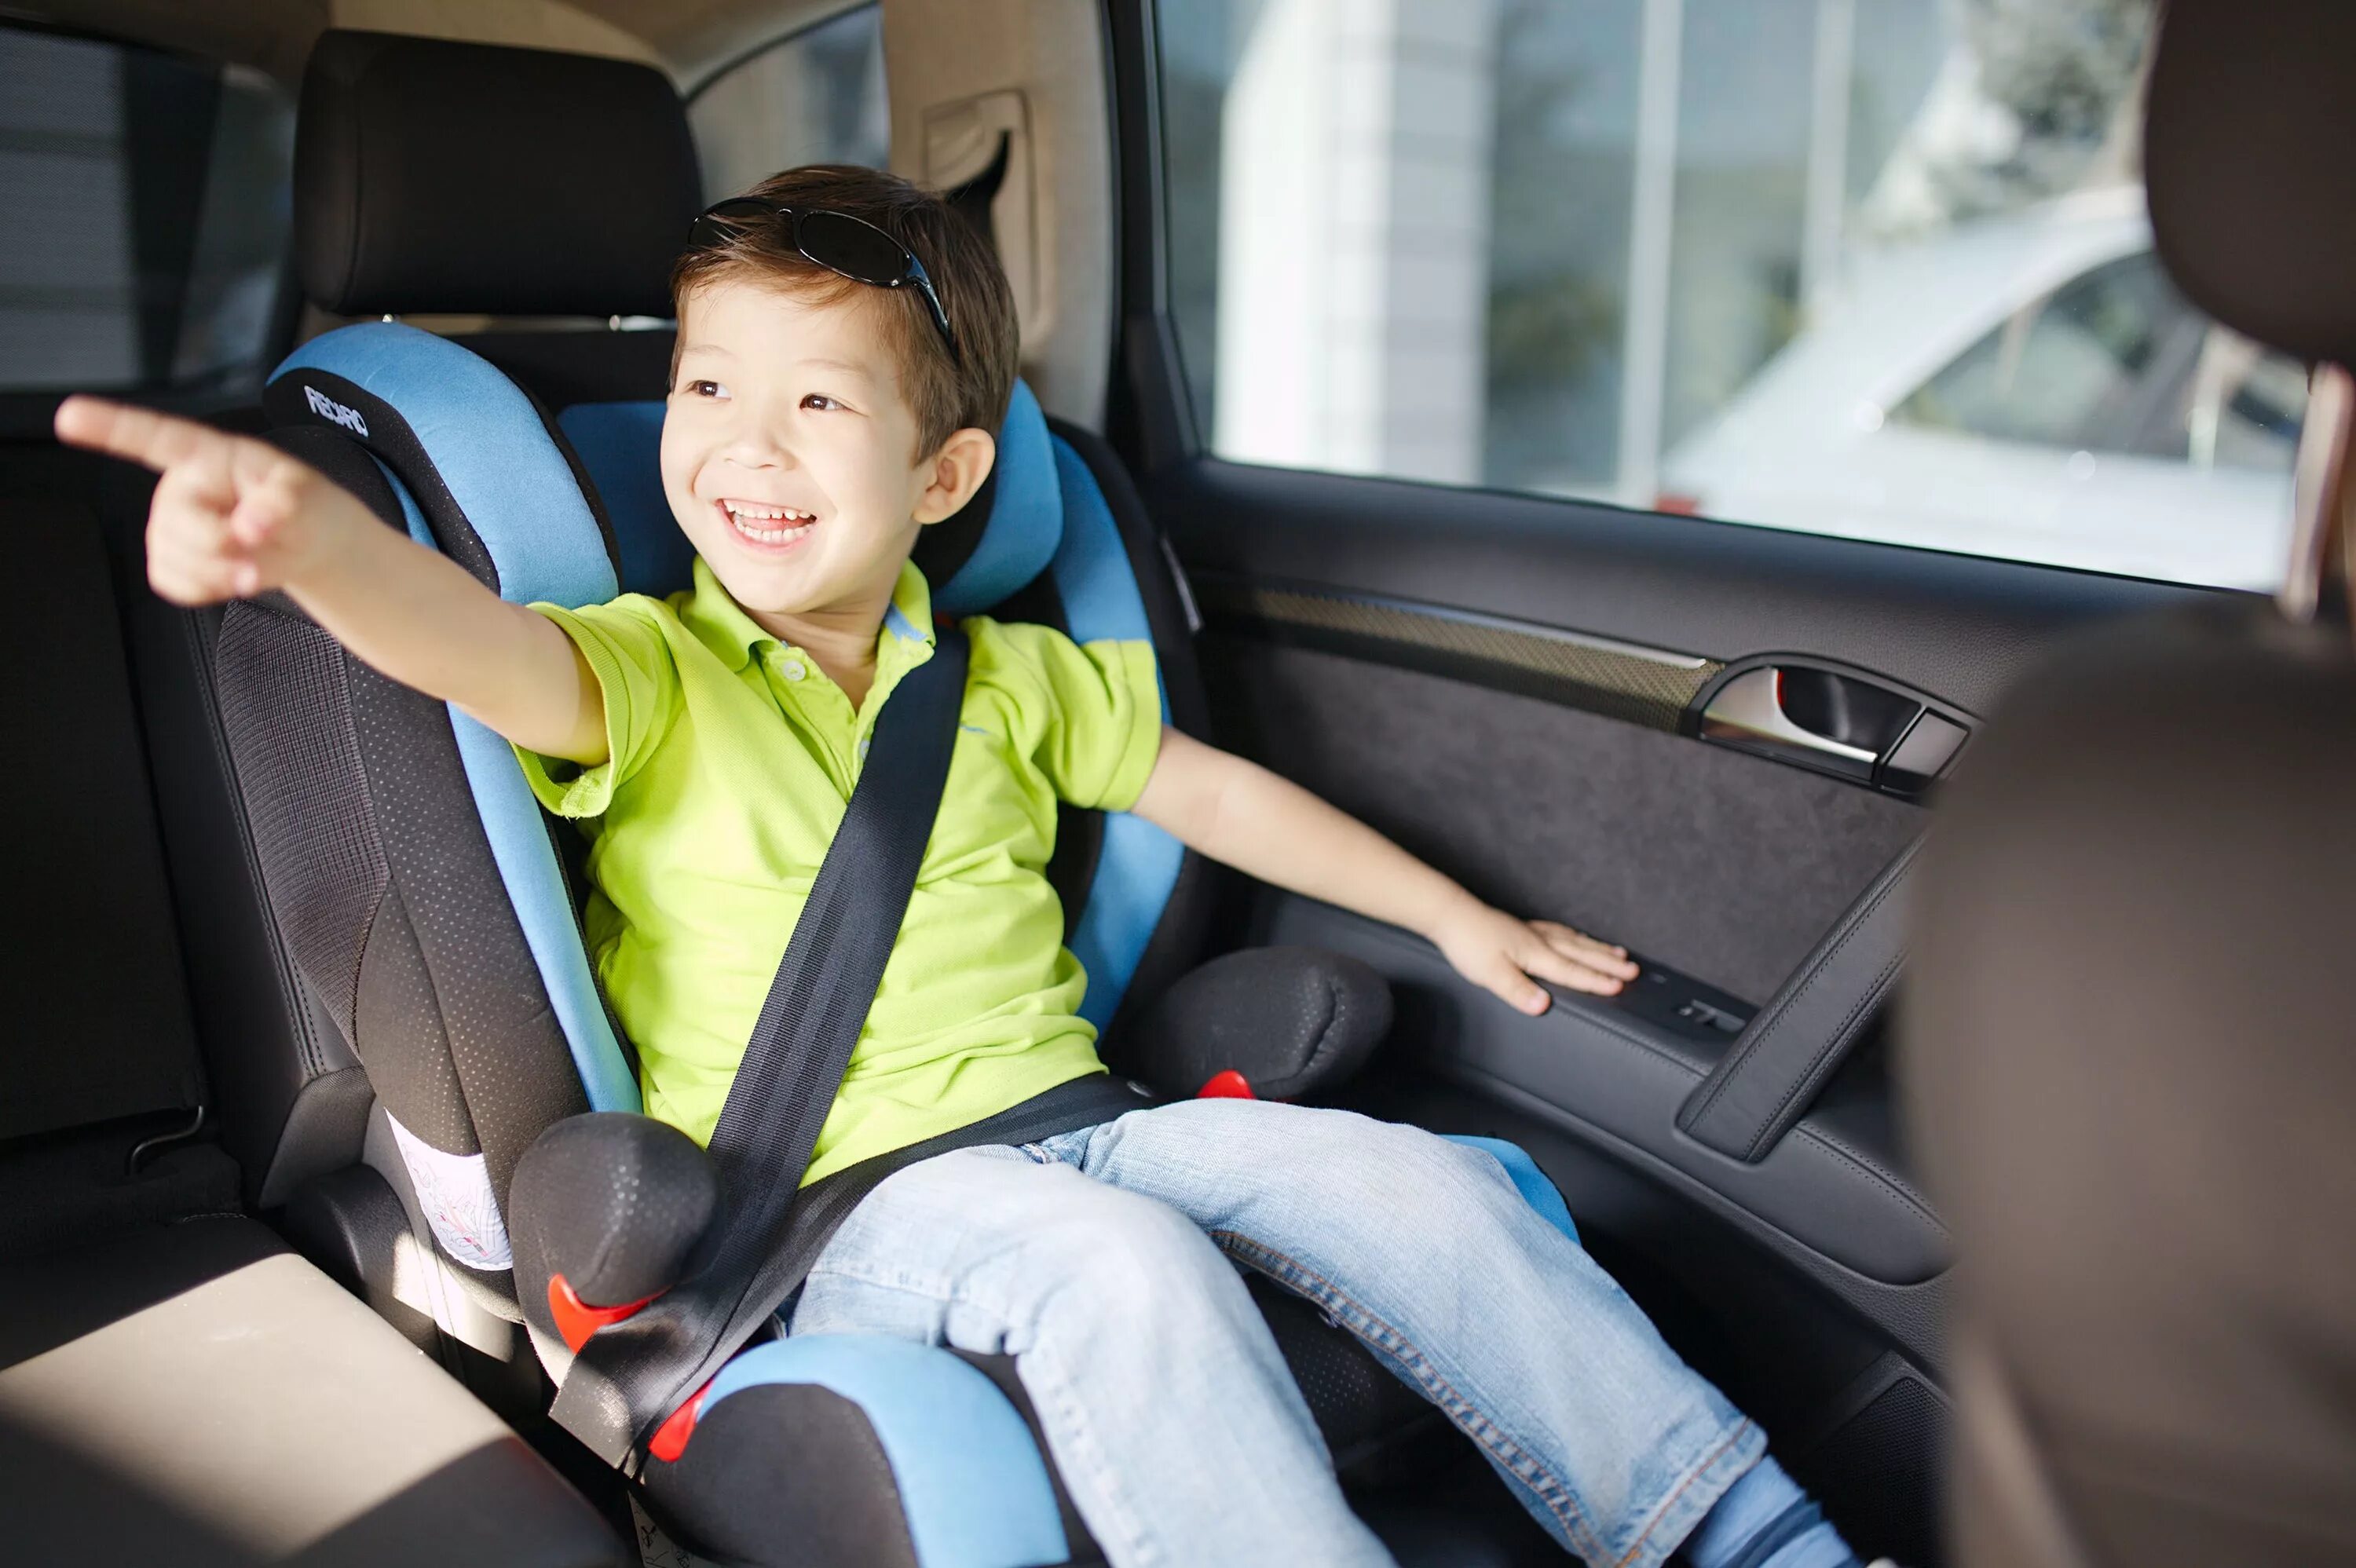 Безопасность в машине на заднем сиденье. Recaro child Safety. Ребенок в автокресле. Автомобиль для детей. Ребенок в автокресле в машине.